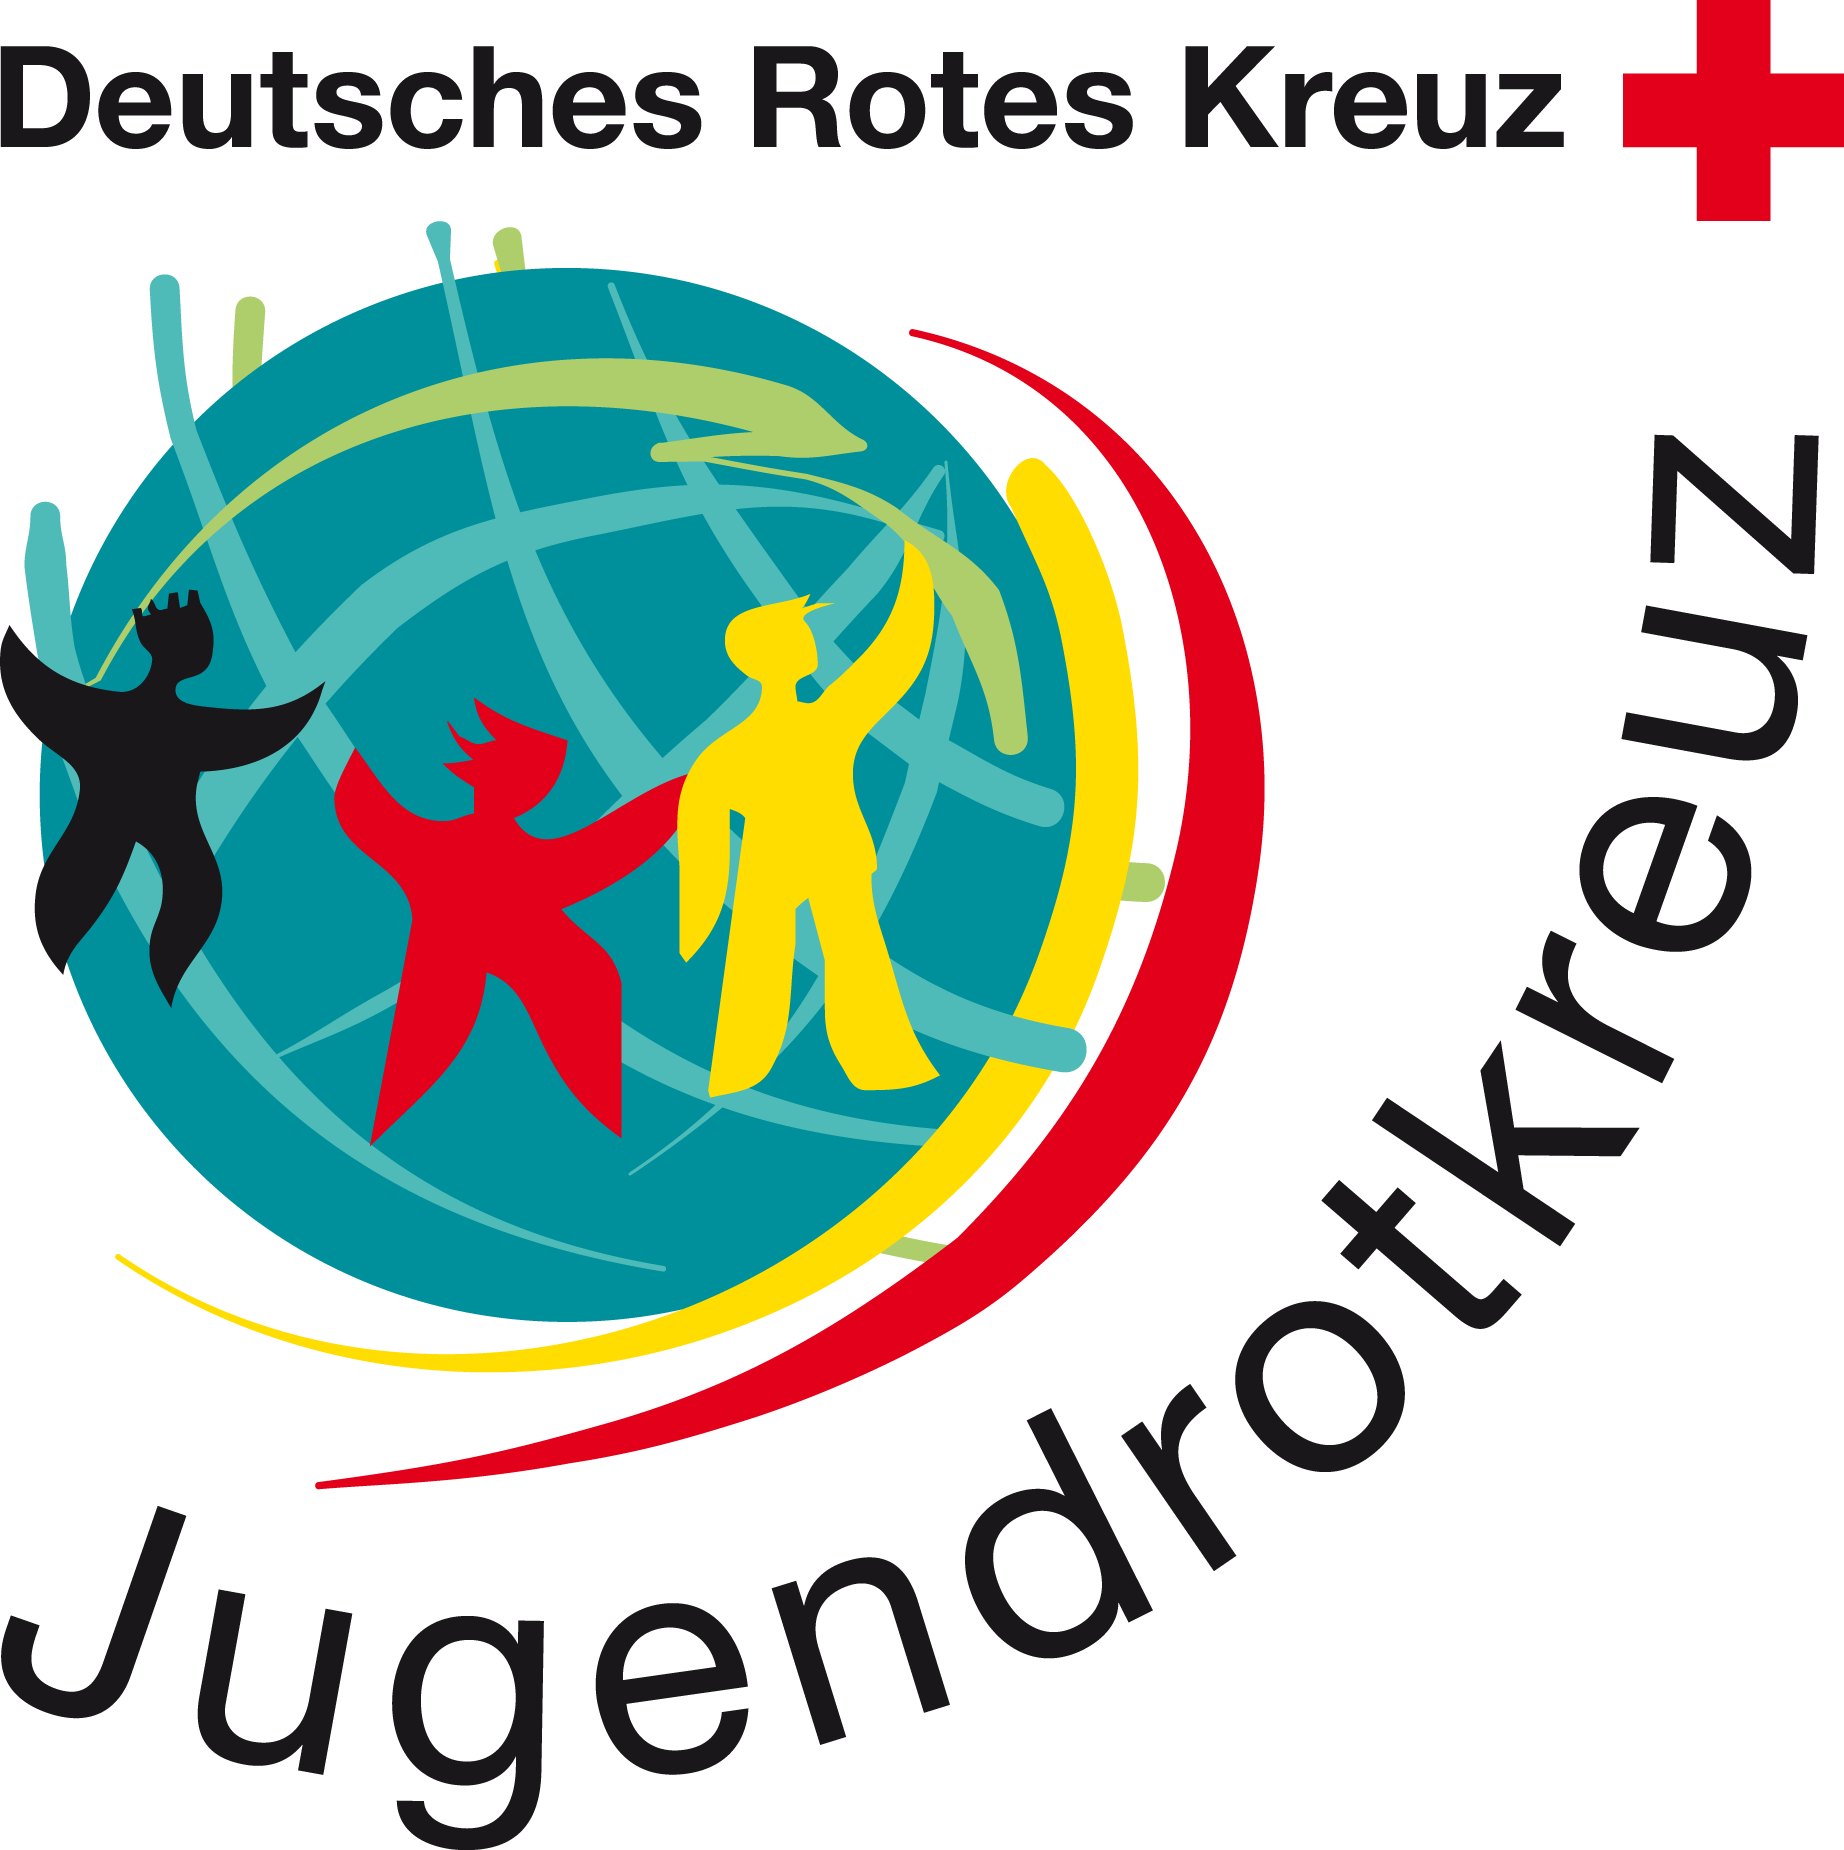 Logo Jugendrotkreuz